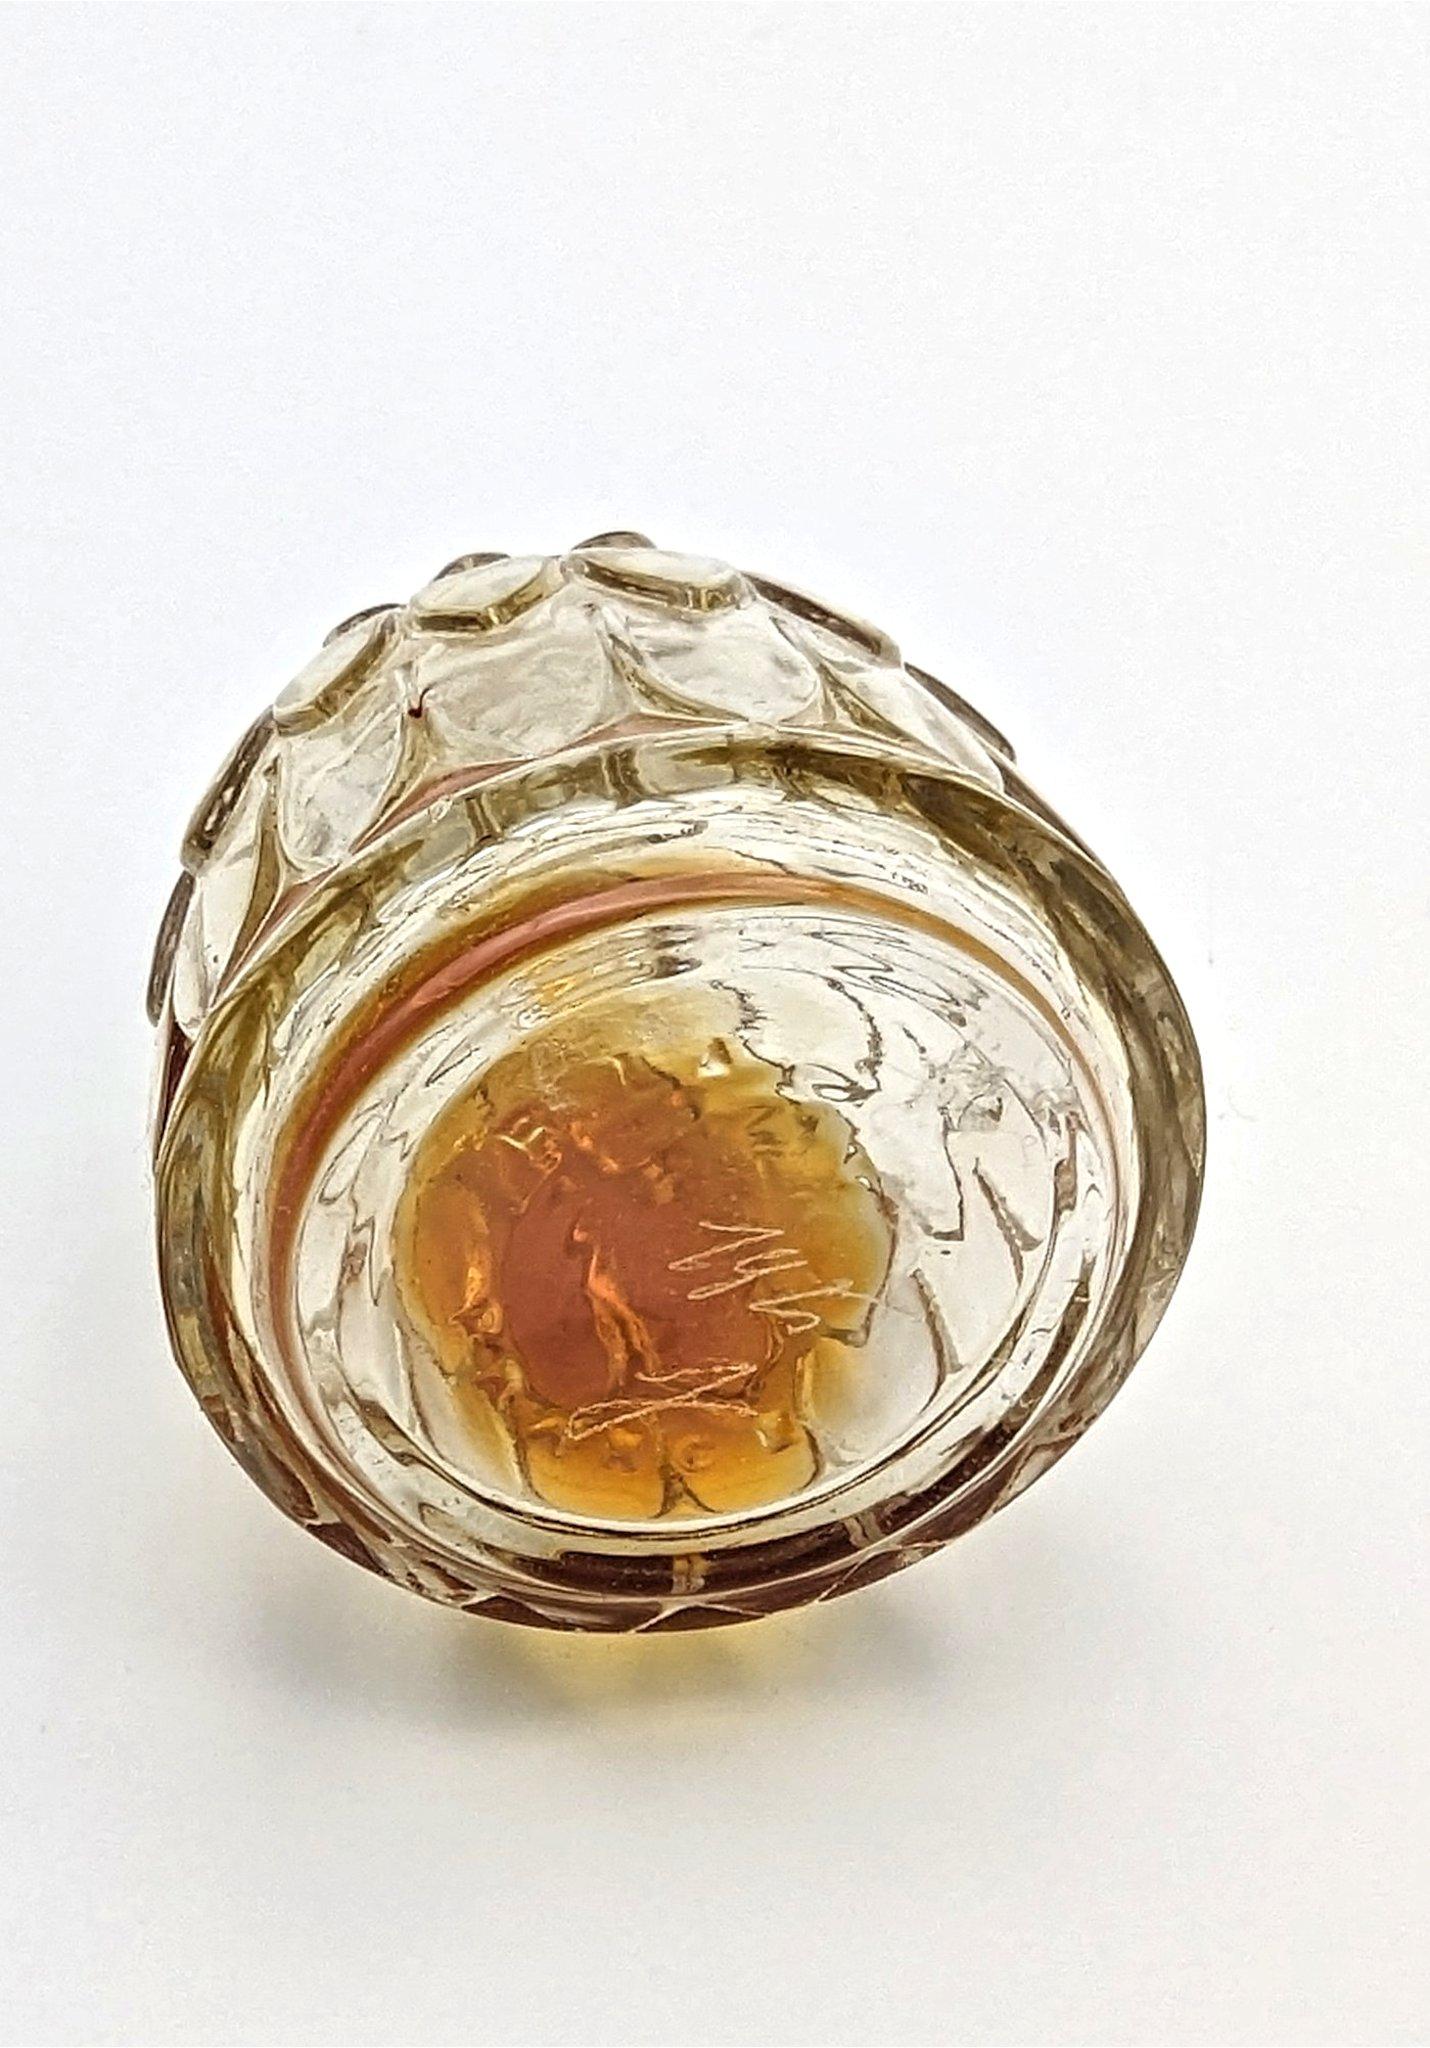 French René Lalique glass art deco perfume bottle 